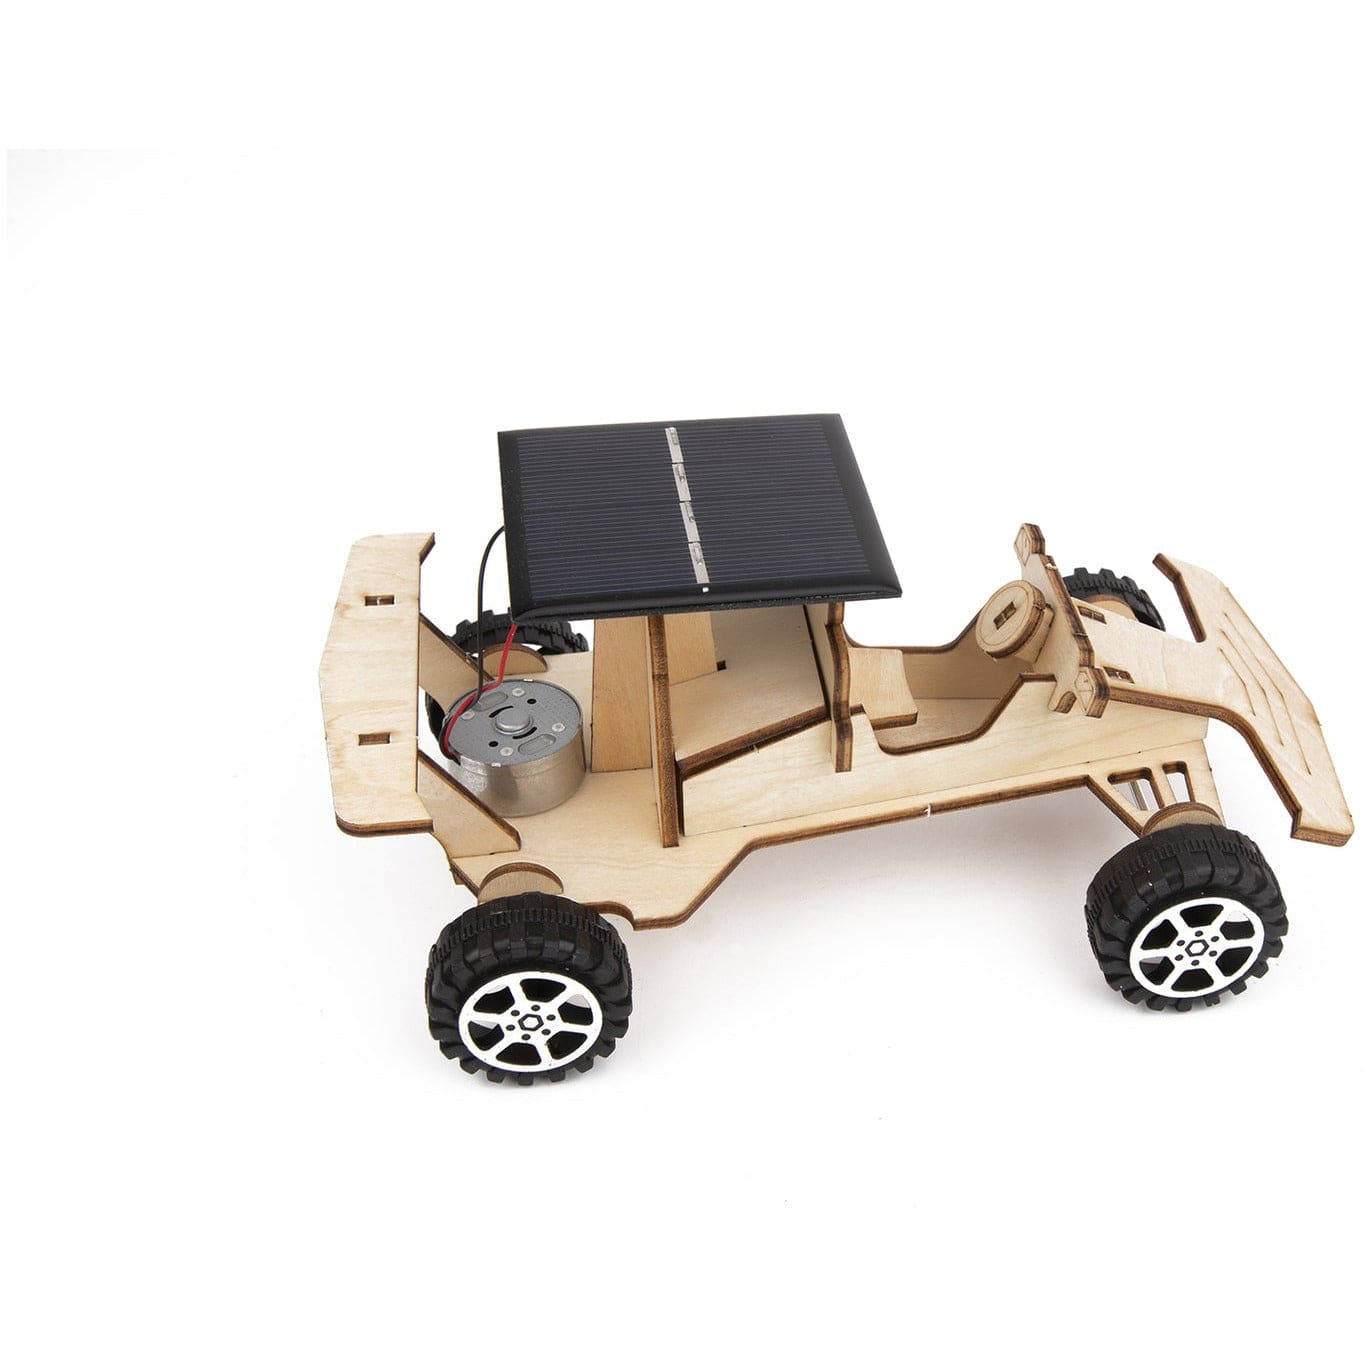 DIY 3D Wooden Solar Racing Car Science & Craft Kit - Sensory Circle